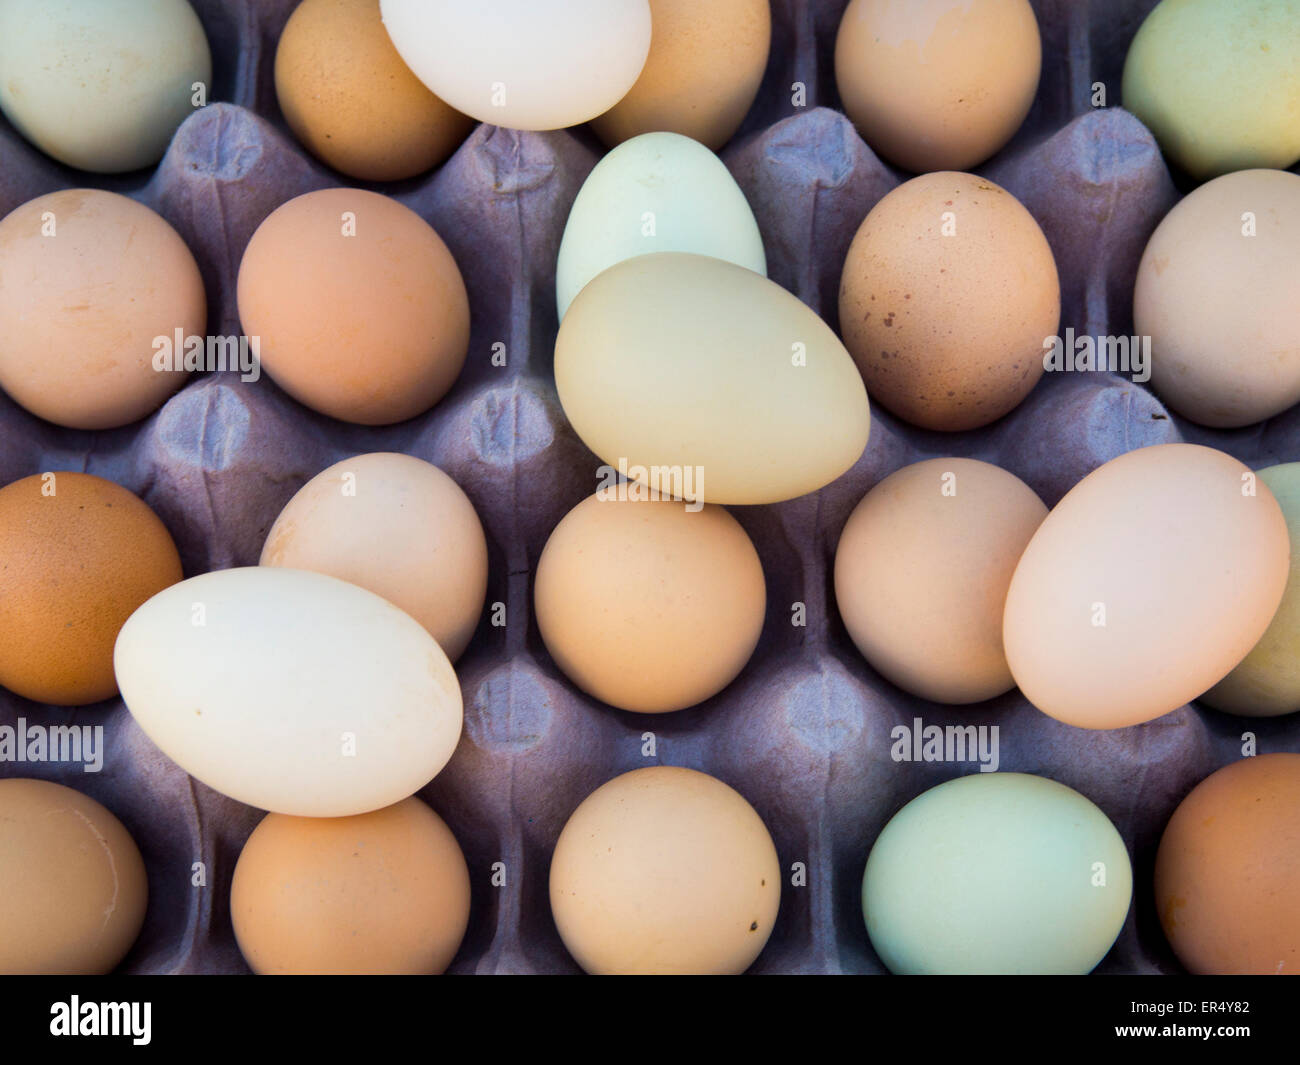 Más de 20.000 imágenes gratis de Huevos Frescos y Huevos - Pixabay